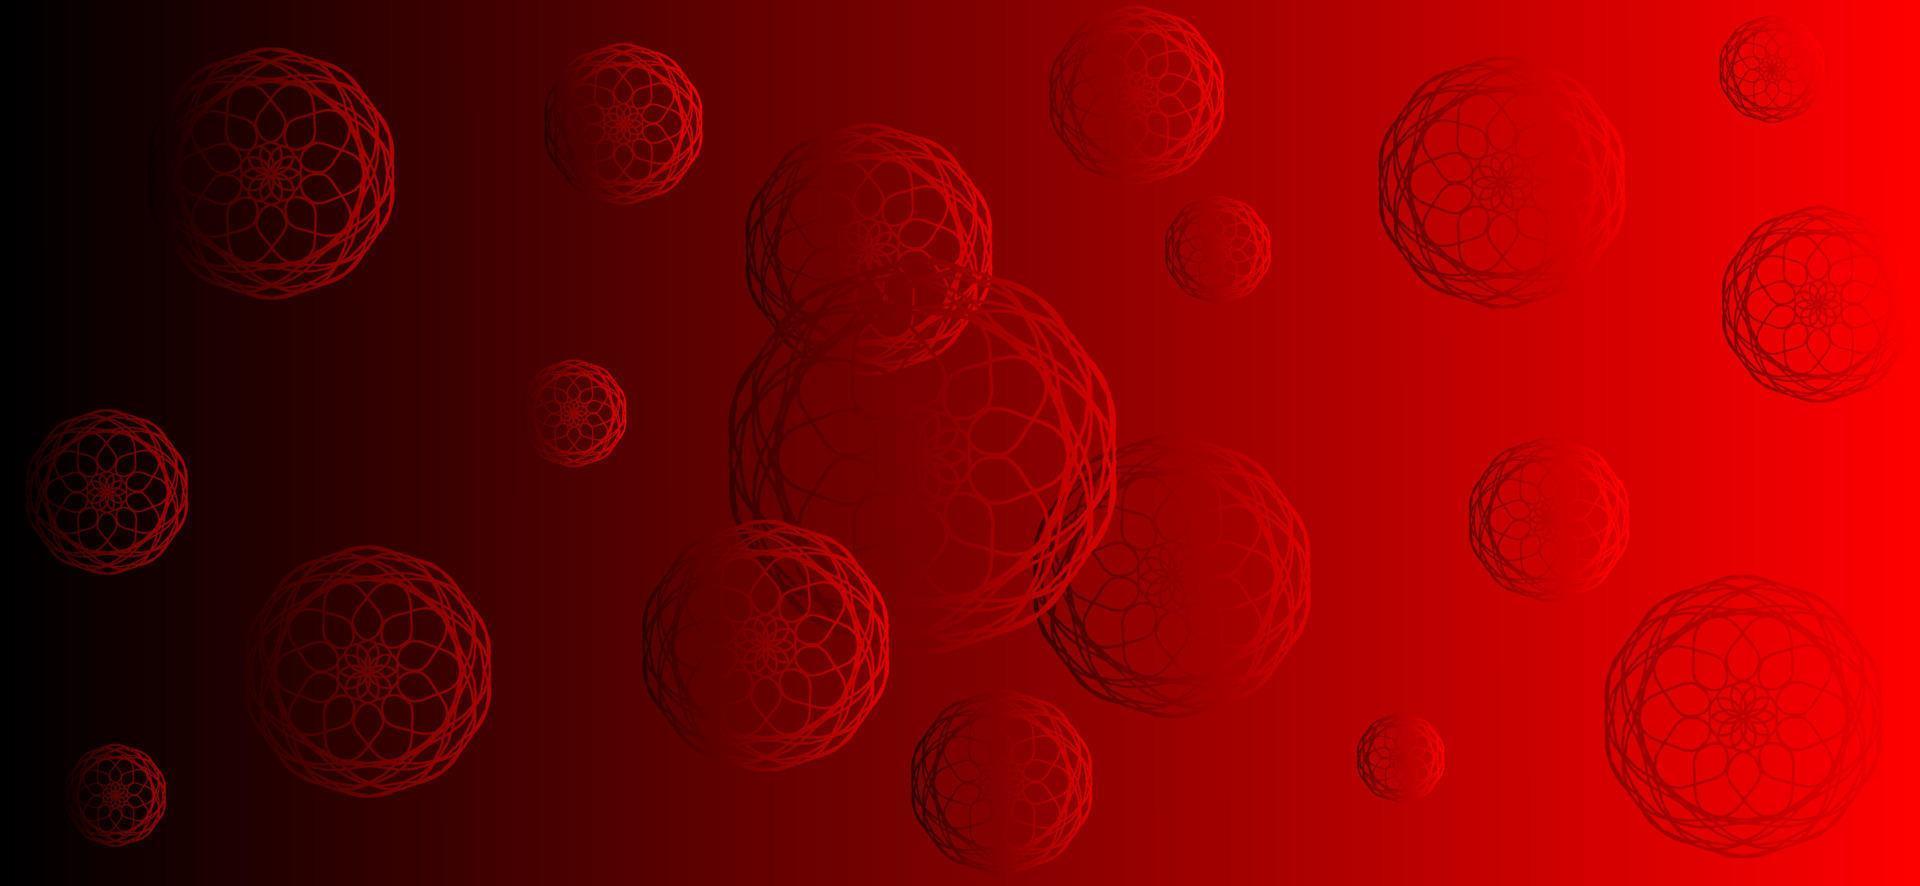 röd gradient abstrakt bakgrundsdesign med mandala prydnad. lämplig för skyltar med islamiskt tema vektor